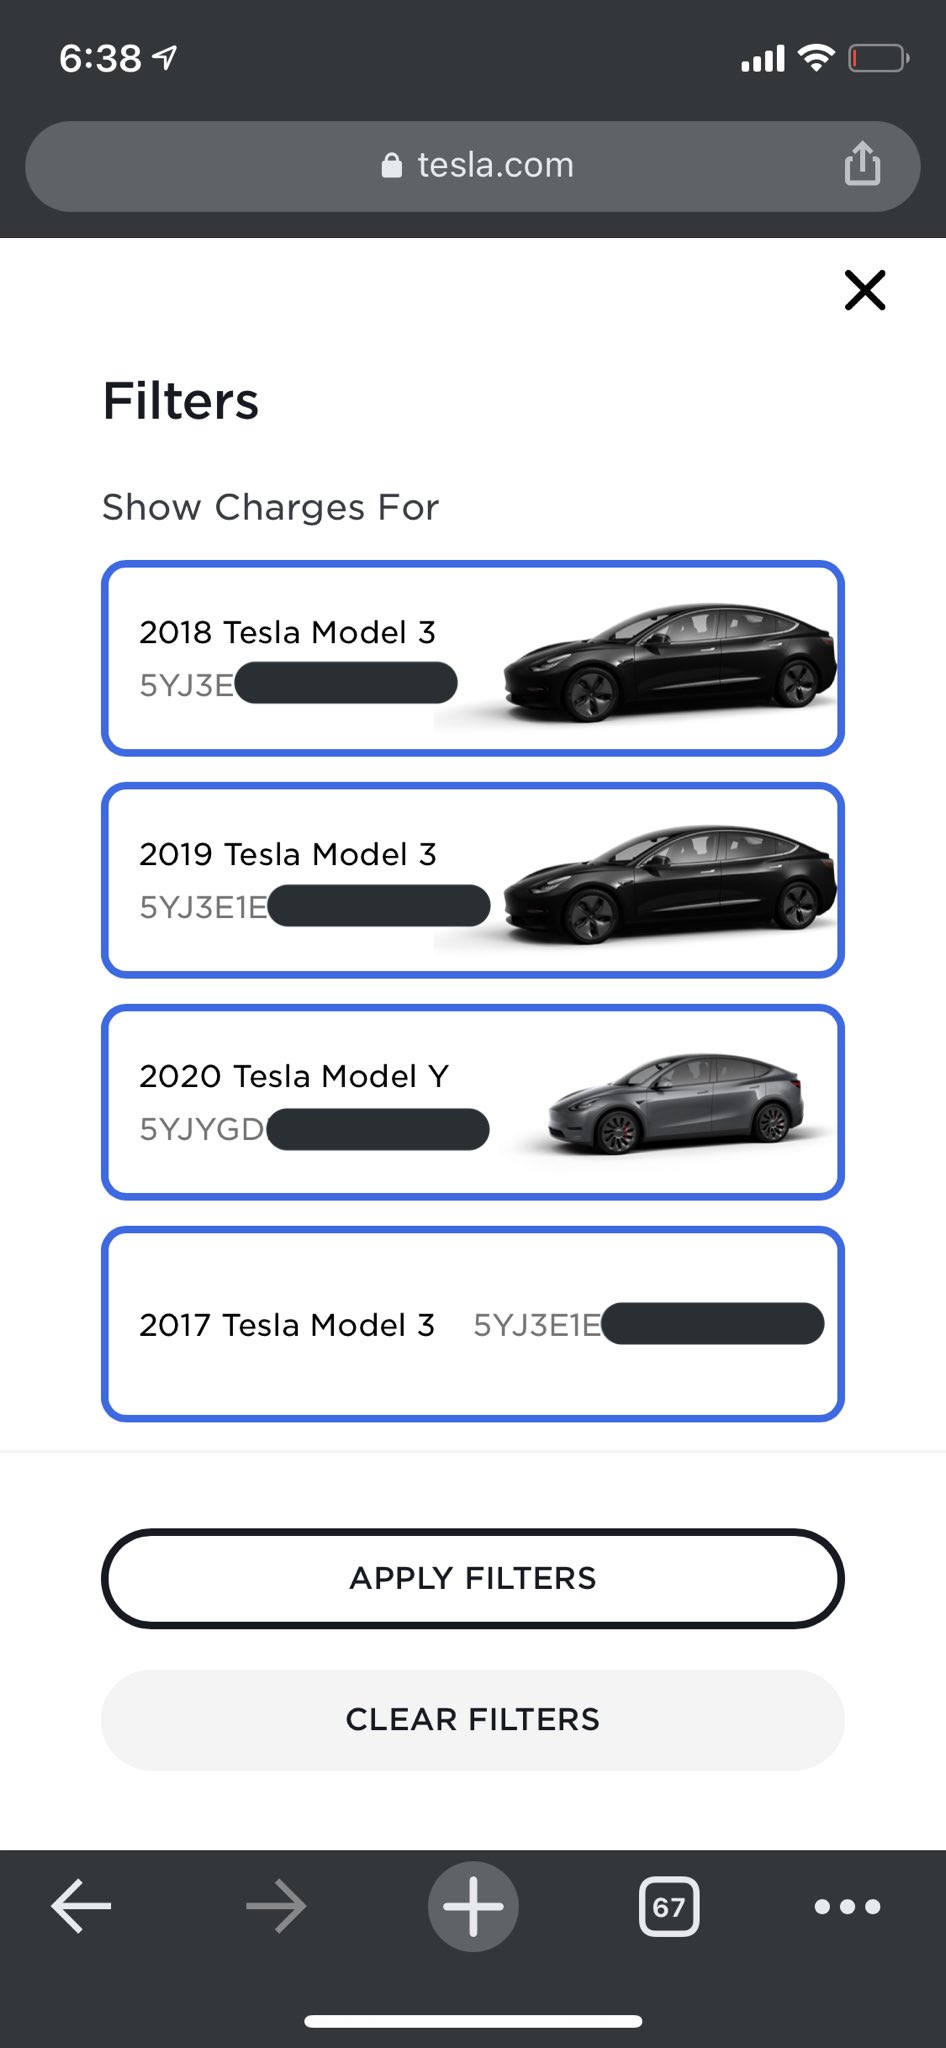 Tesla vehicle filtering